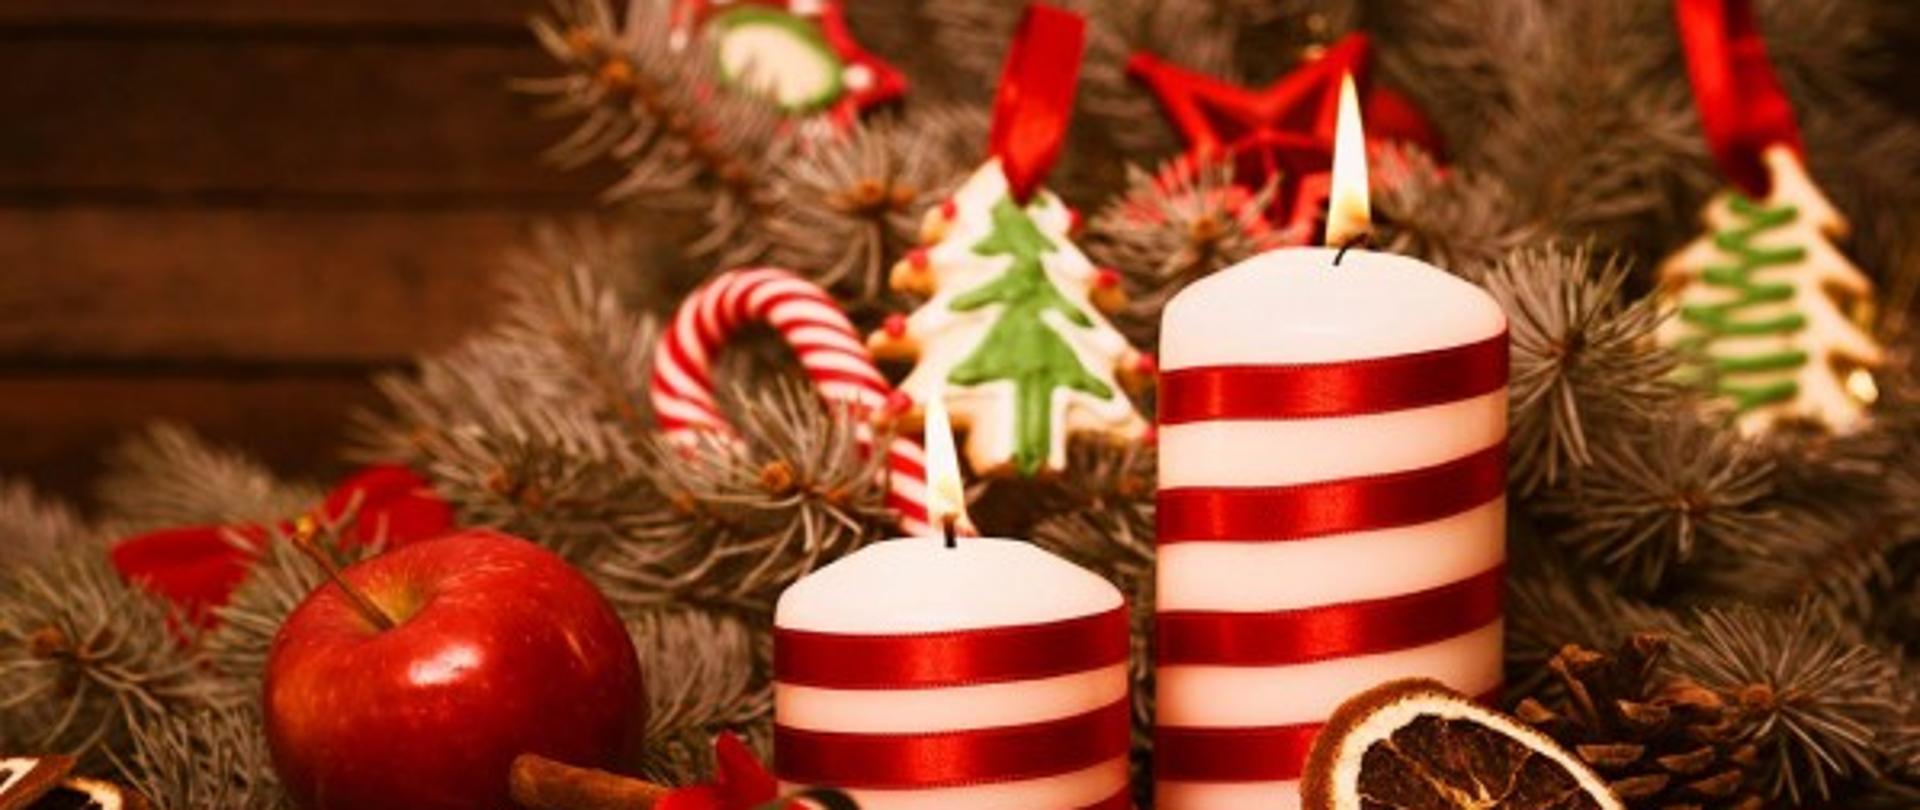 zdjęcia w czerwono ciepłych odcieniach przedstawia stroik świąteczny, który zawiera pierniczki, dwie świeczki, jabłko, igliwie i laski cukrowe